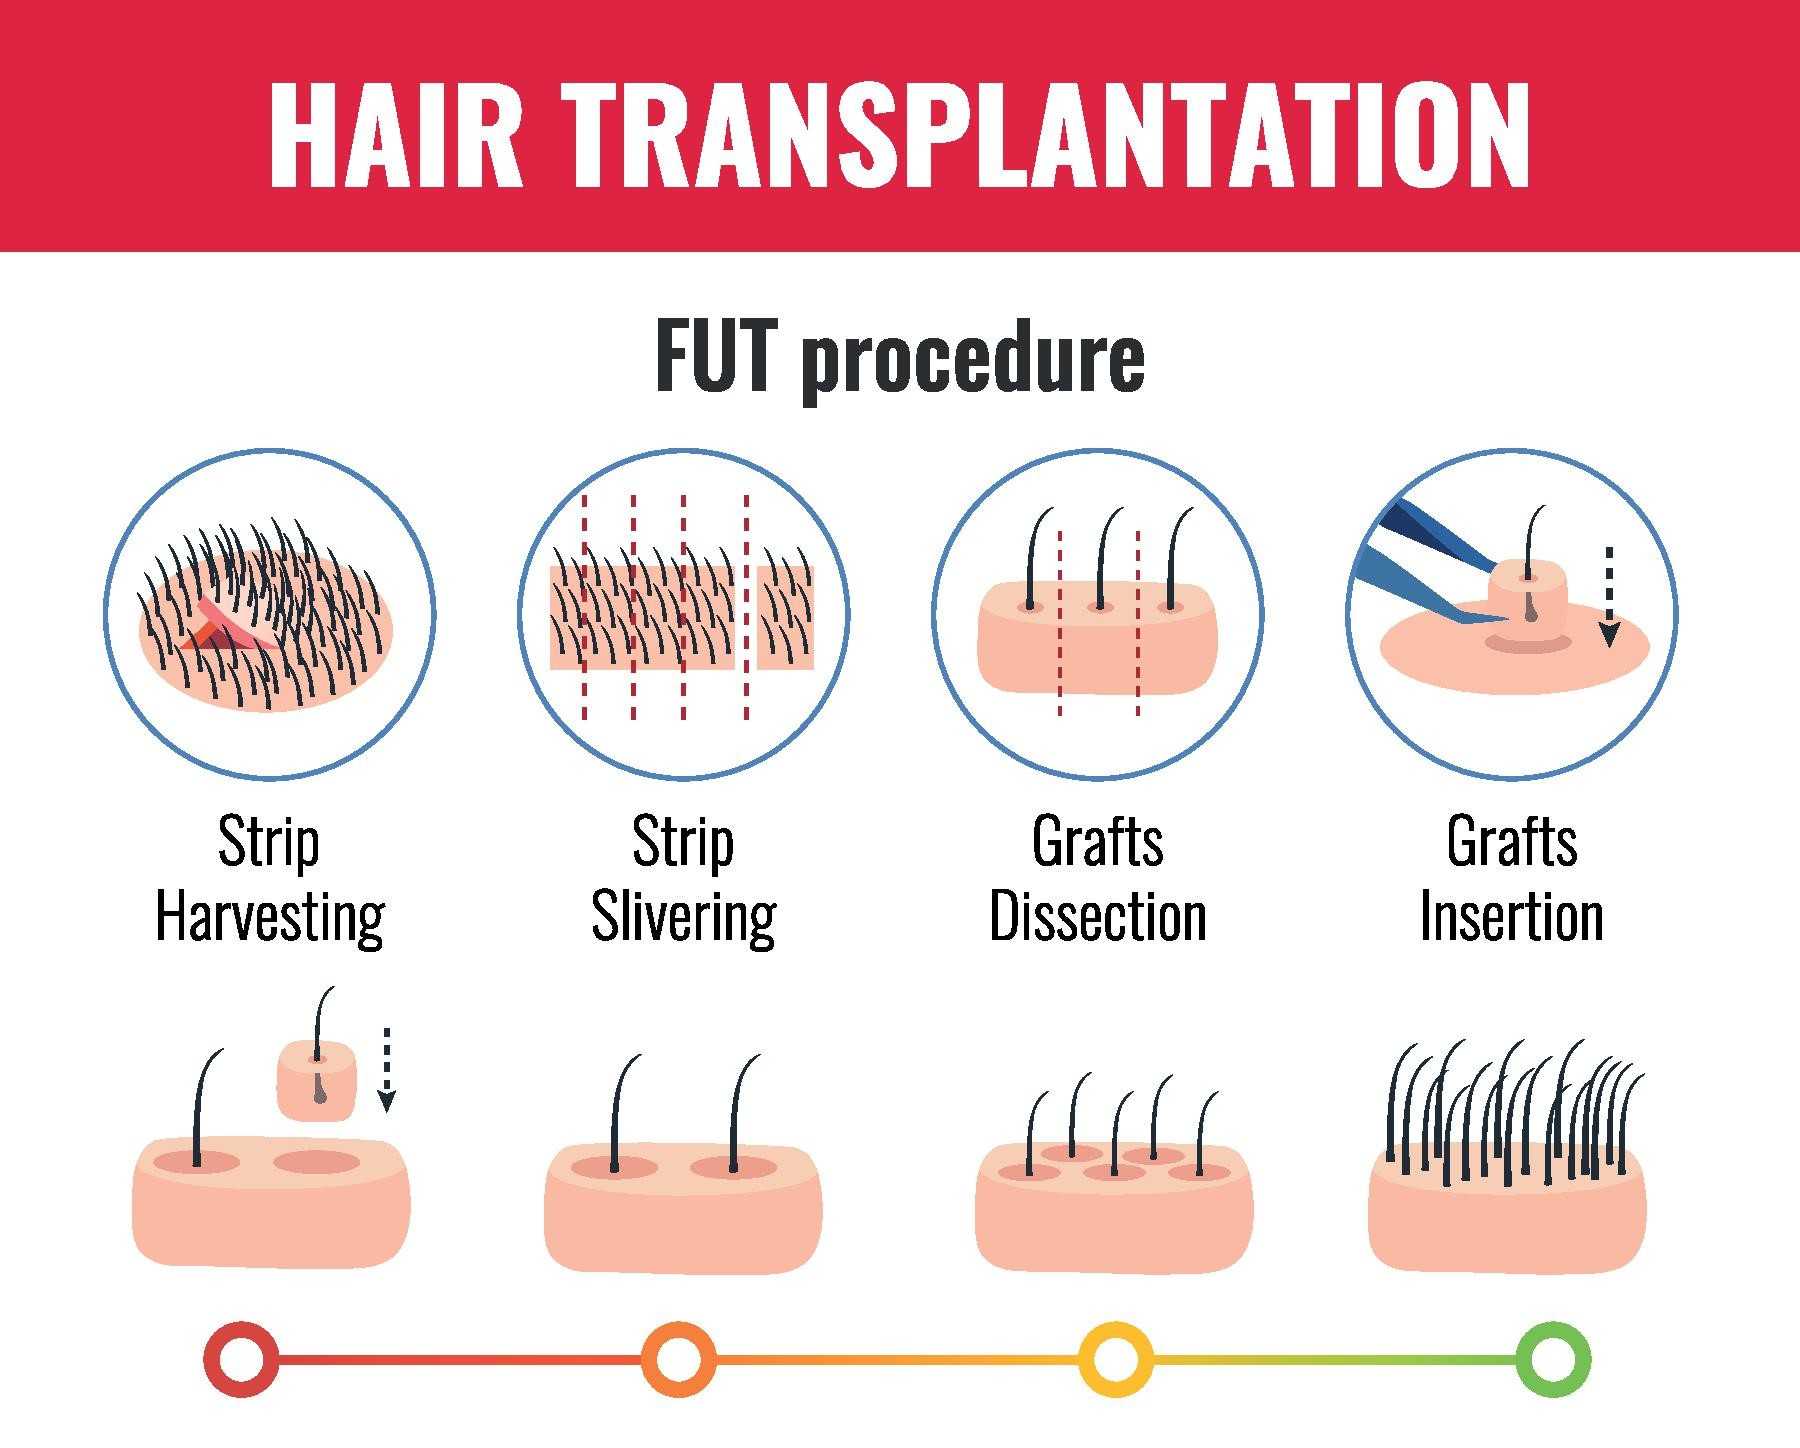 Follicular Unit Transplantation (FUT)